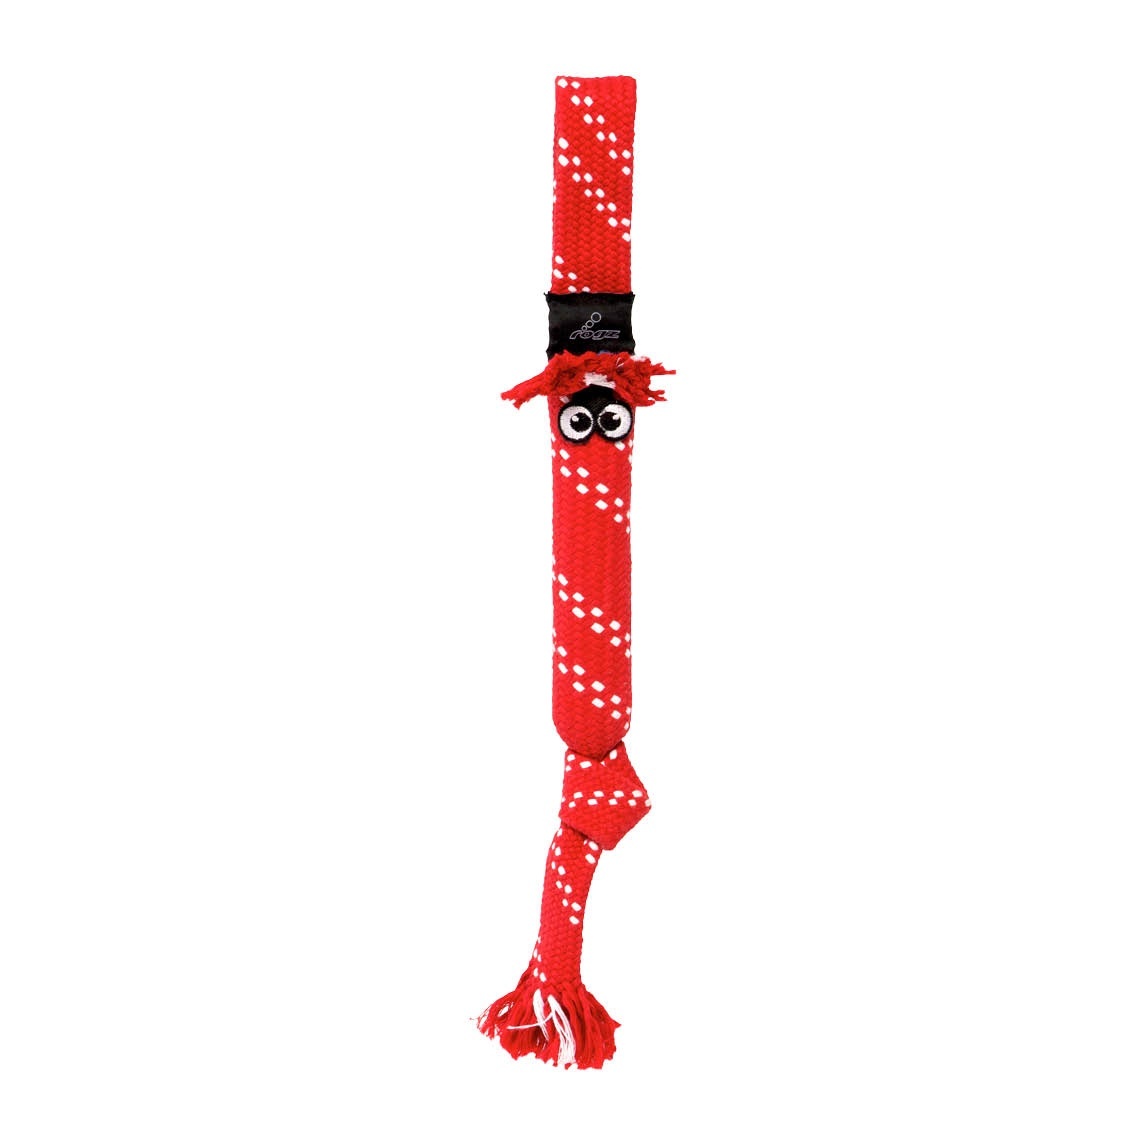 Rogz Rogz игрушка веревочная шуршащая SCRUBZ, красный (S) rogz игрушка для собак rogz scrubz s веревочная шуршащая сосиска красная 315 мм